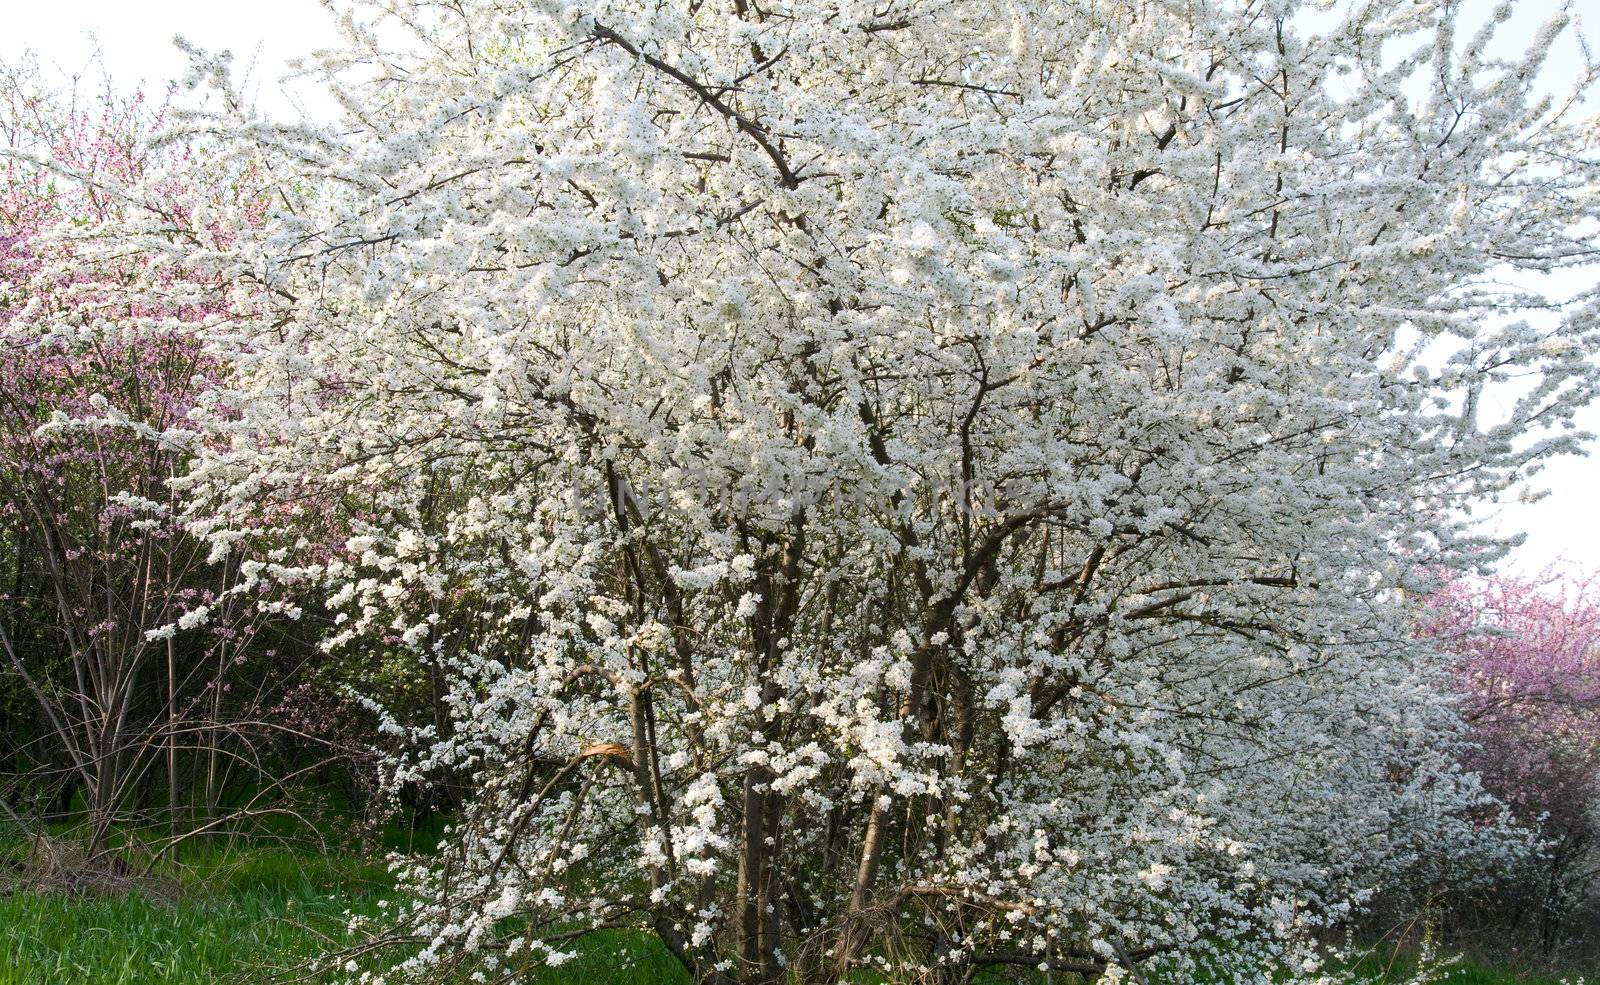 Flowering trees by baggiovara